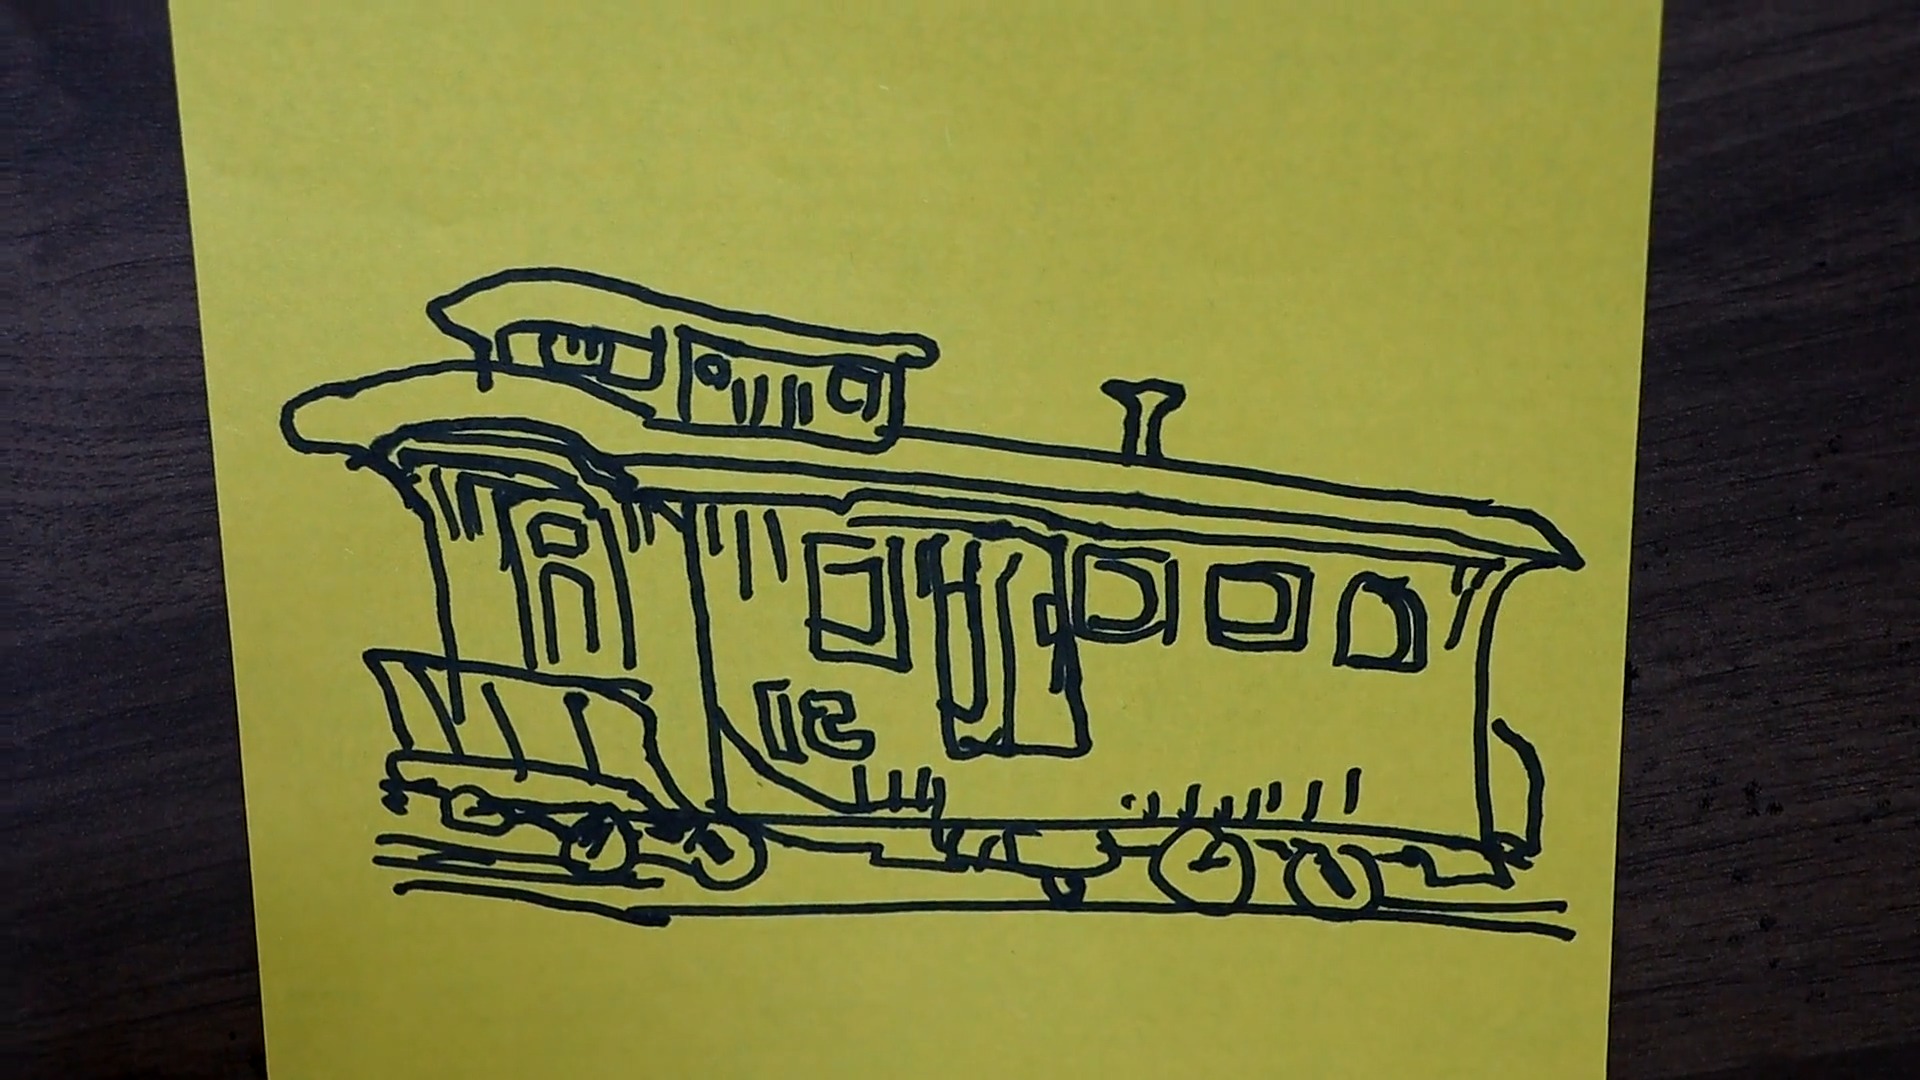 小火车车厢简笔画图片